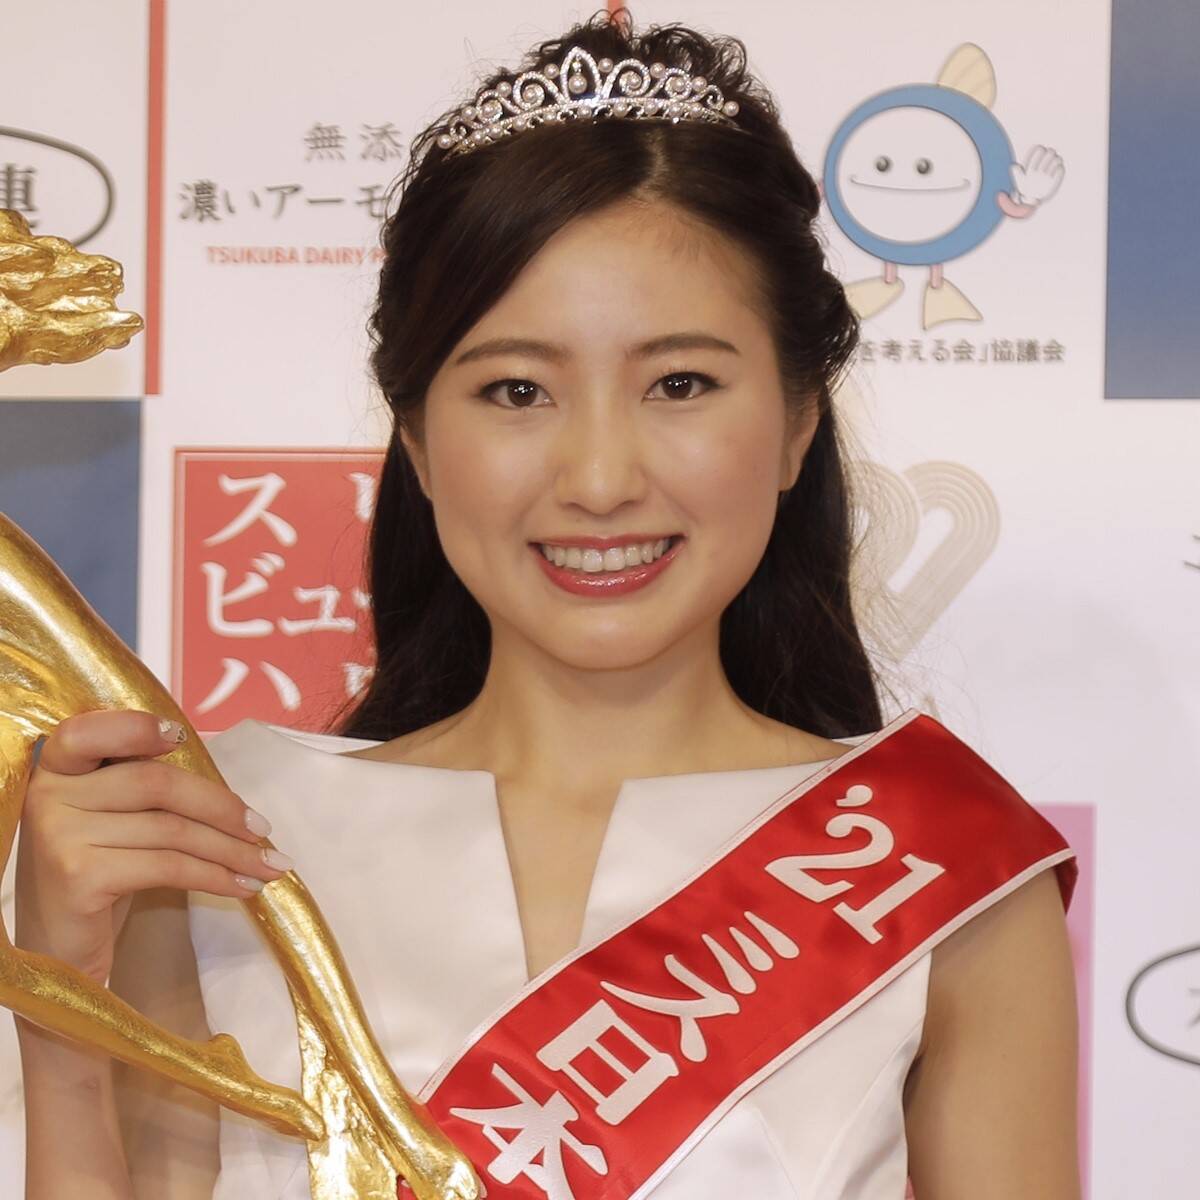 美の最高位 ミス日本コンテスト21 グランプリに関学の松井朝海さん輝く 21年3月24日 エキサイトニュース